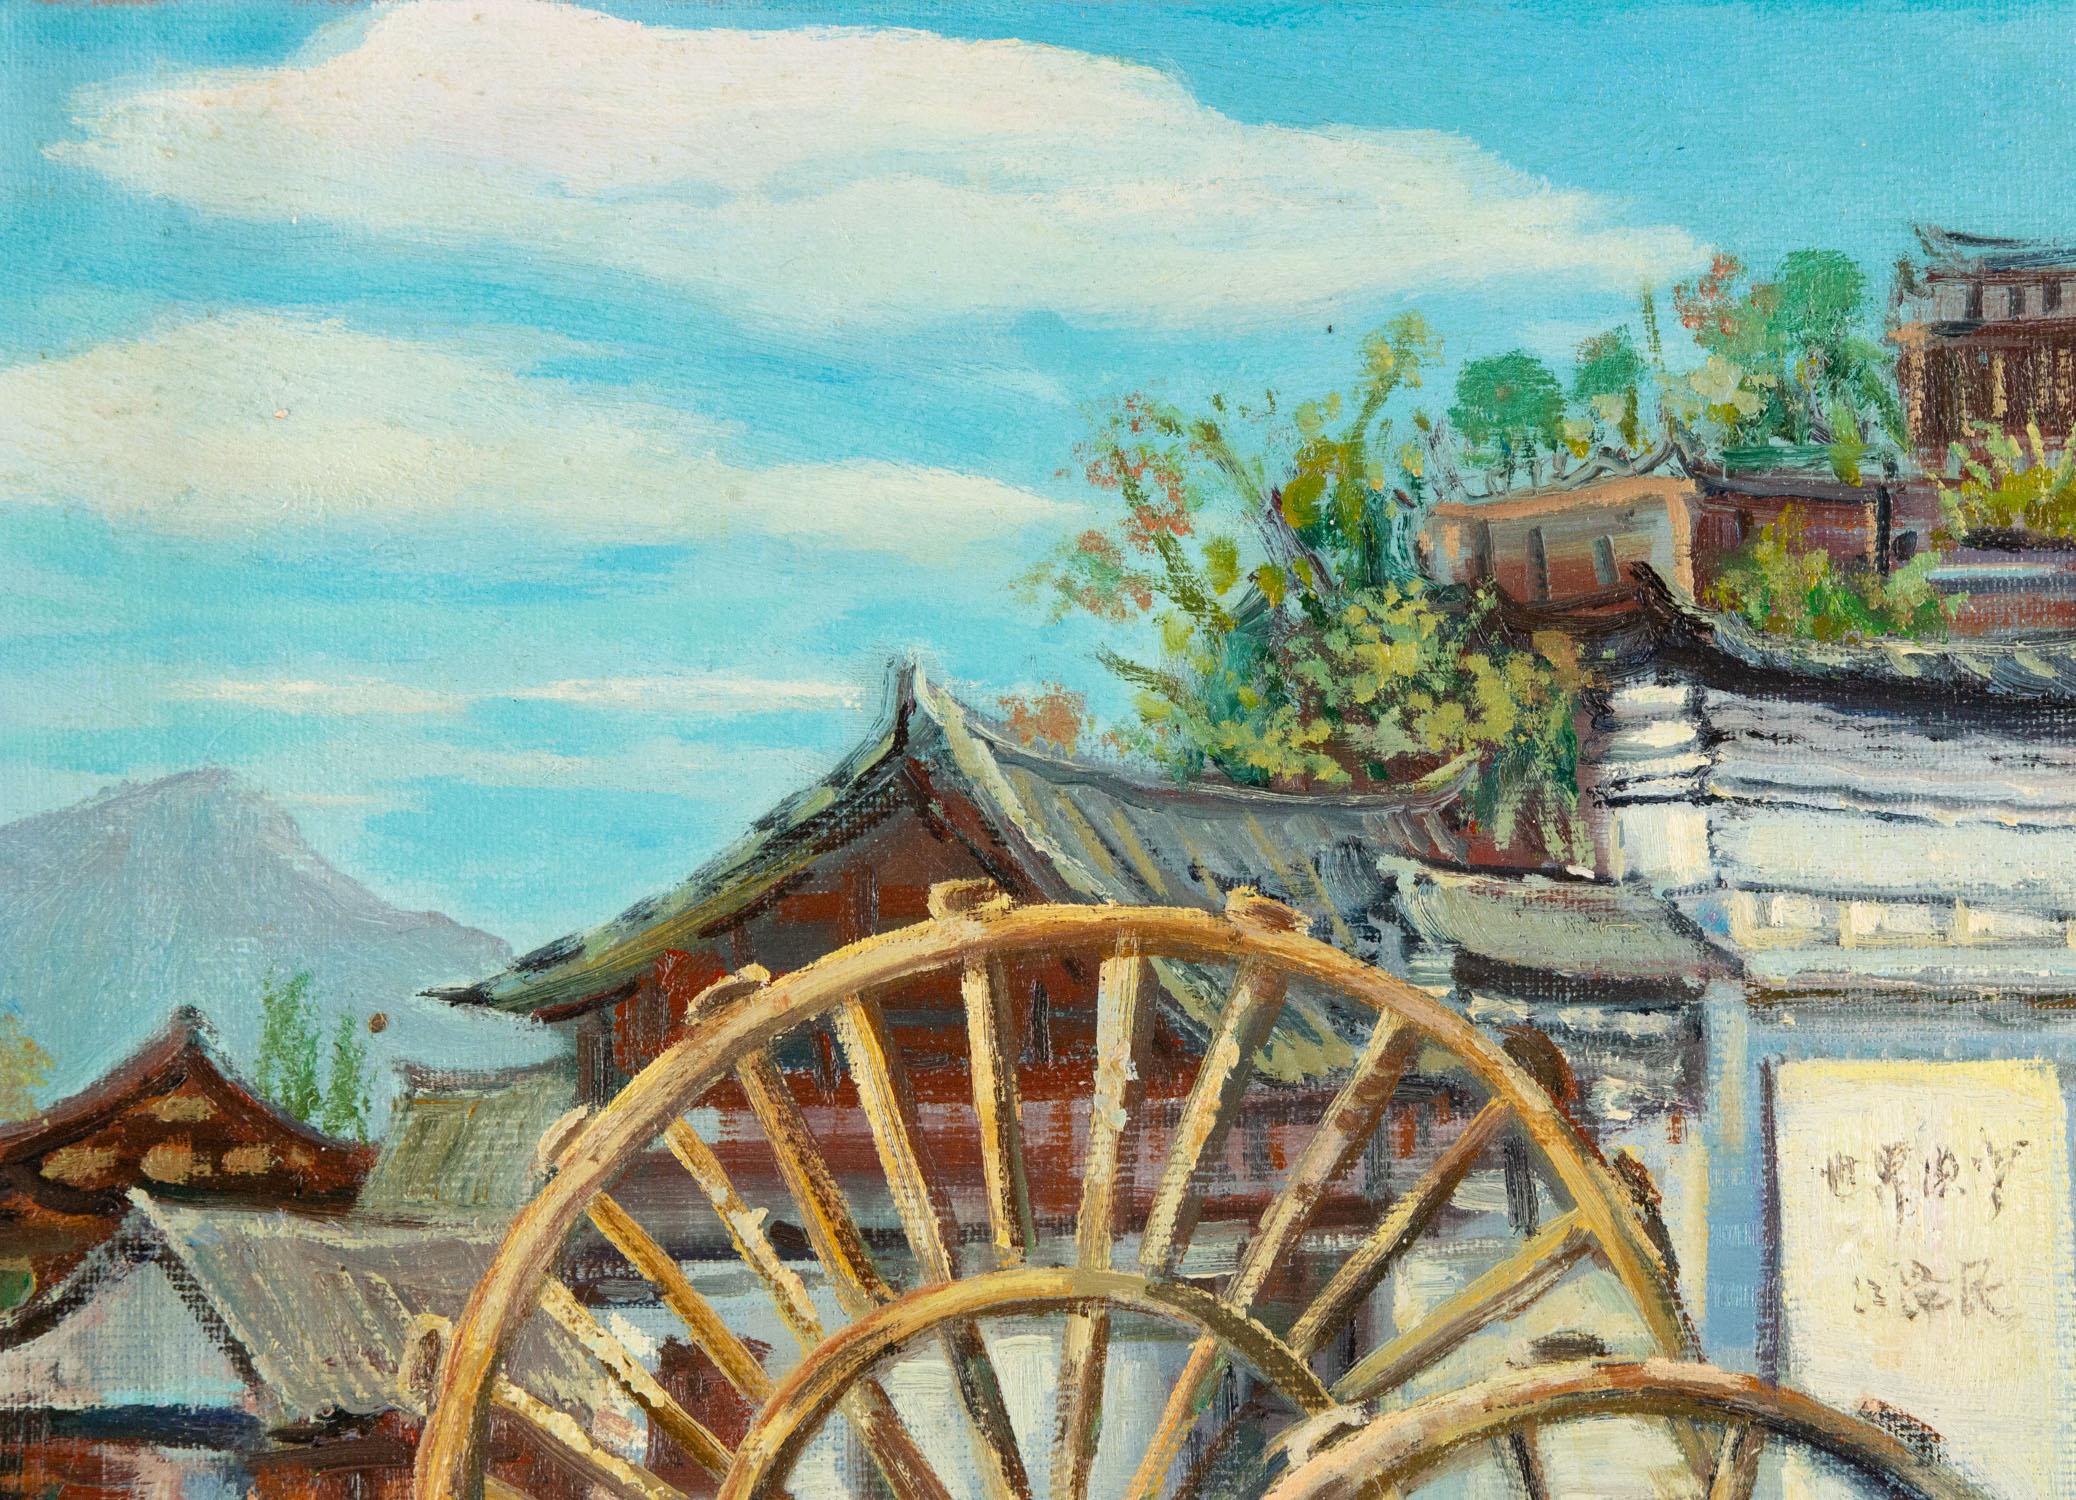 DeJun Wang Landscape original huile sur toile « Scène du Lijiang » - Painting de Dejun Wang